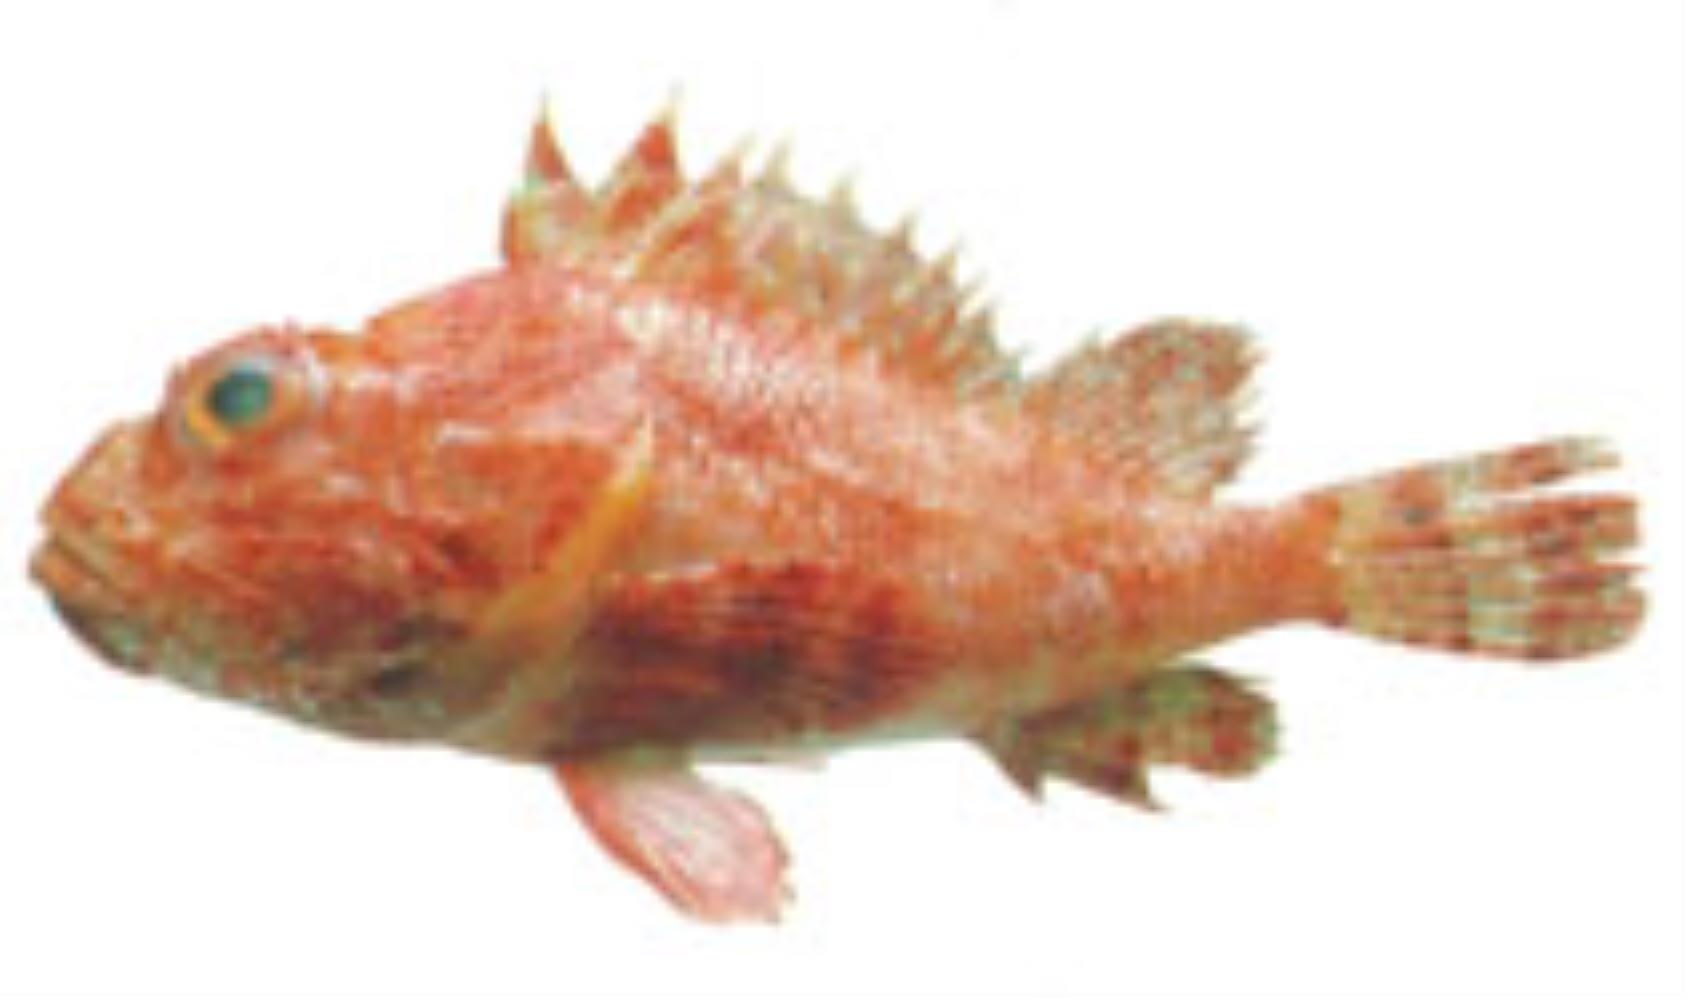 Hunchback scorpionfish